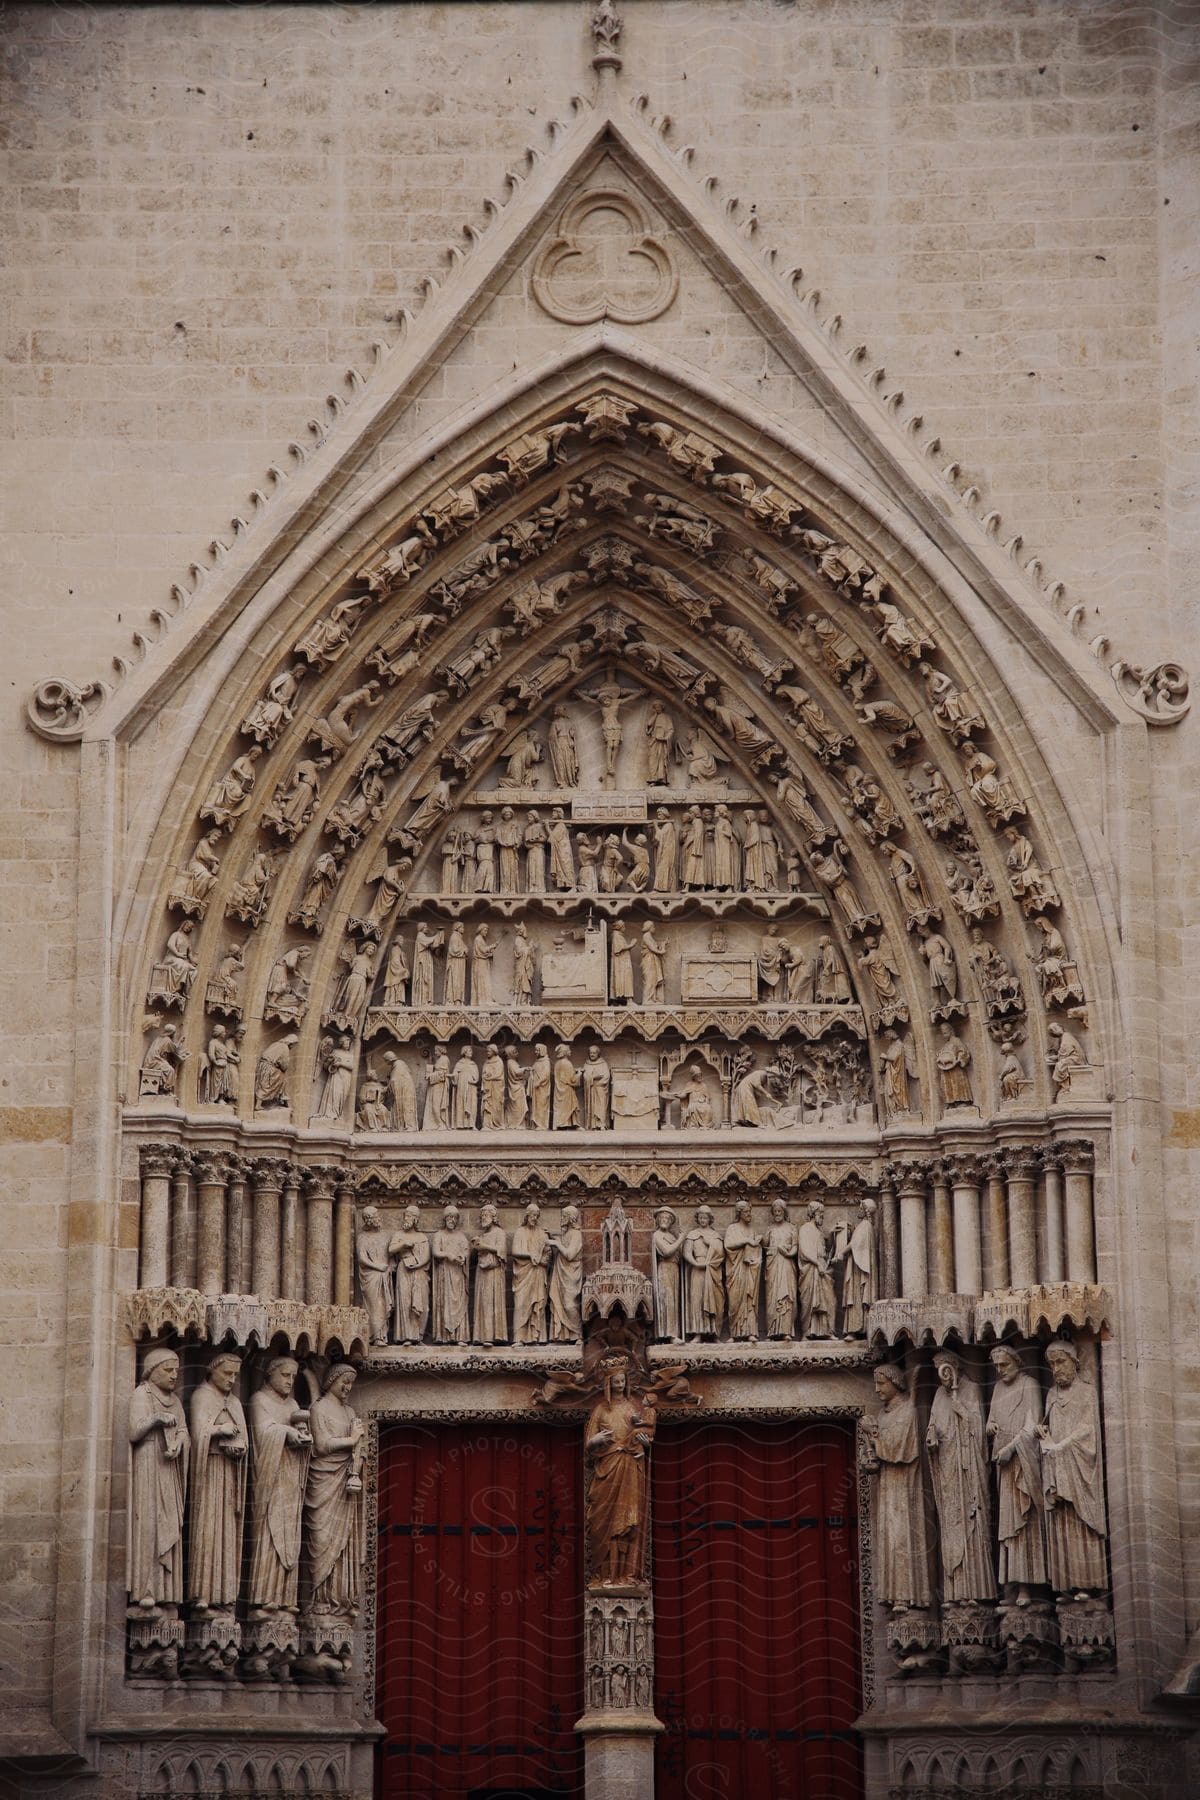 An ornate church door